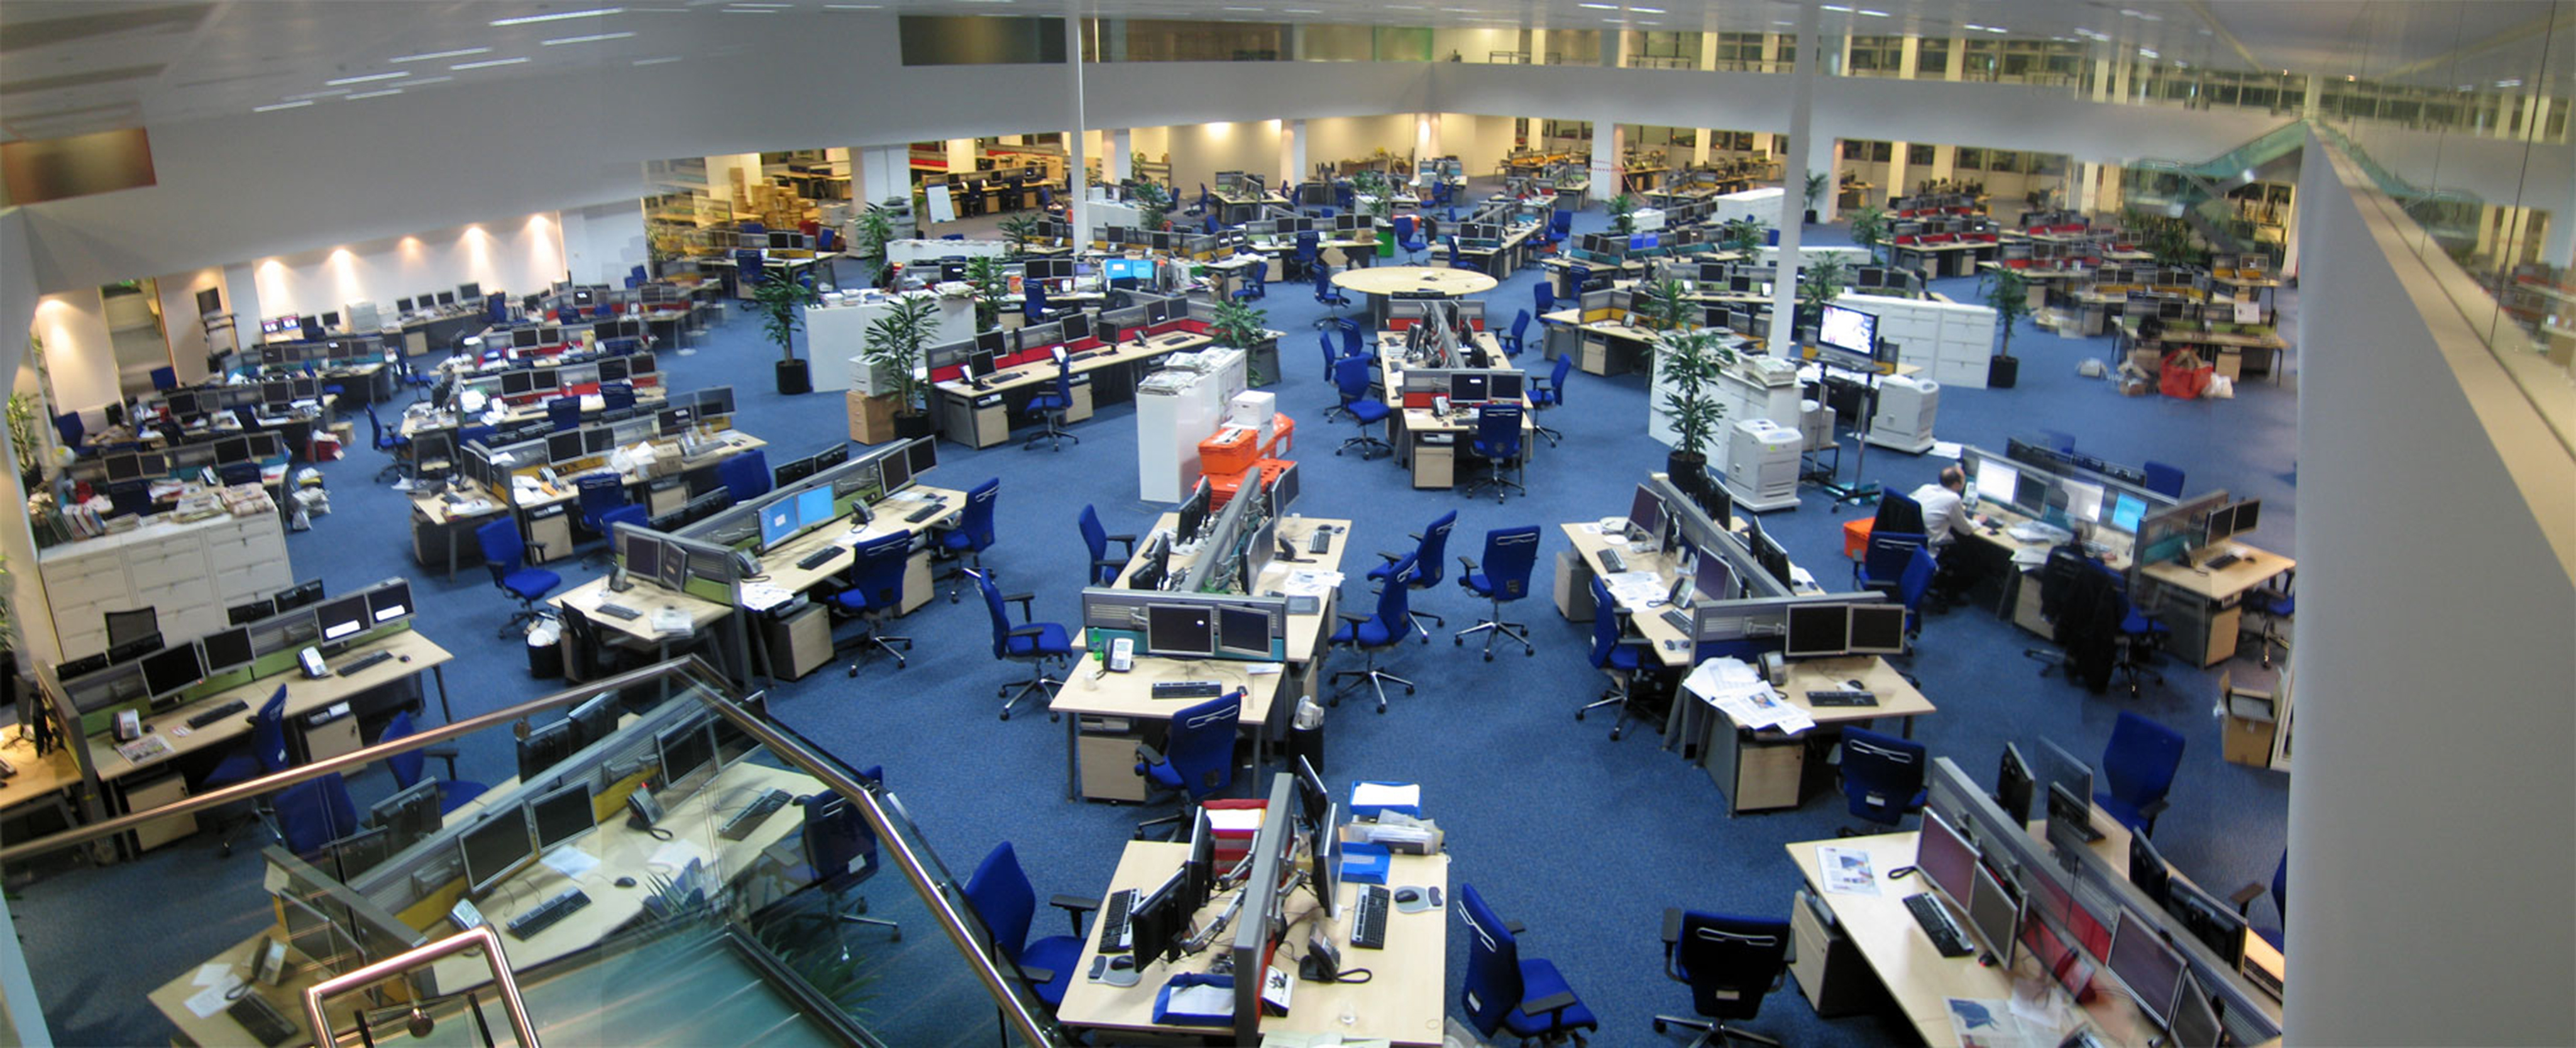 Esta foto muestra una gran sala de noticias abierta con suficiente espacio para sentar a unos 200 empleados.